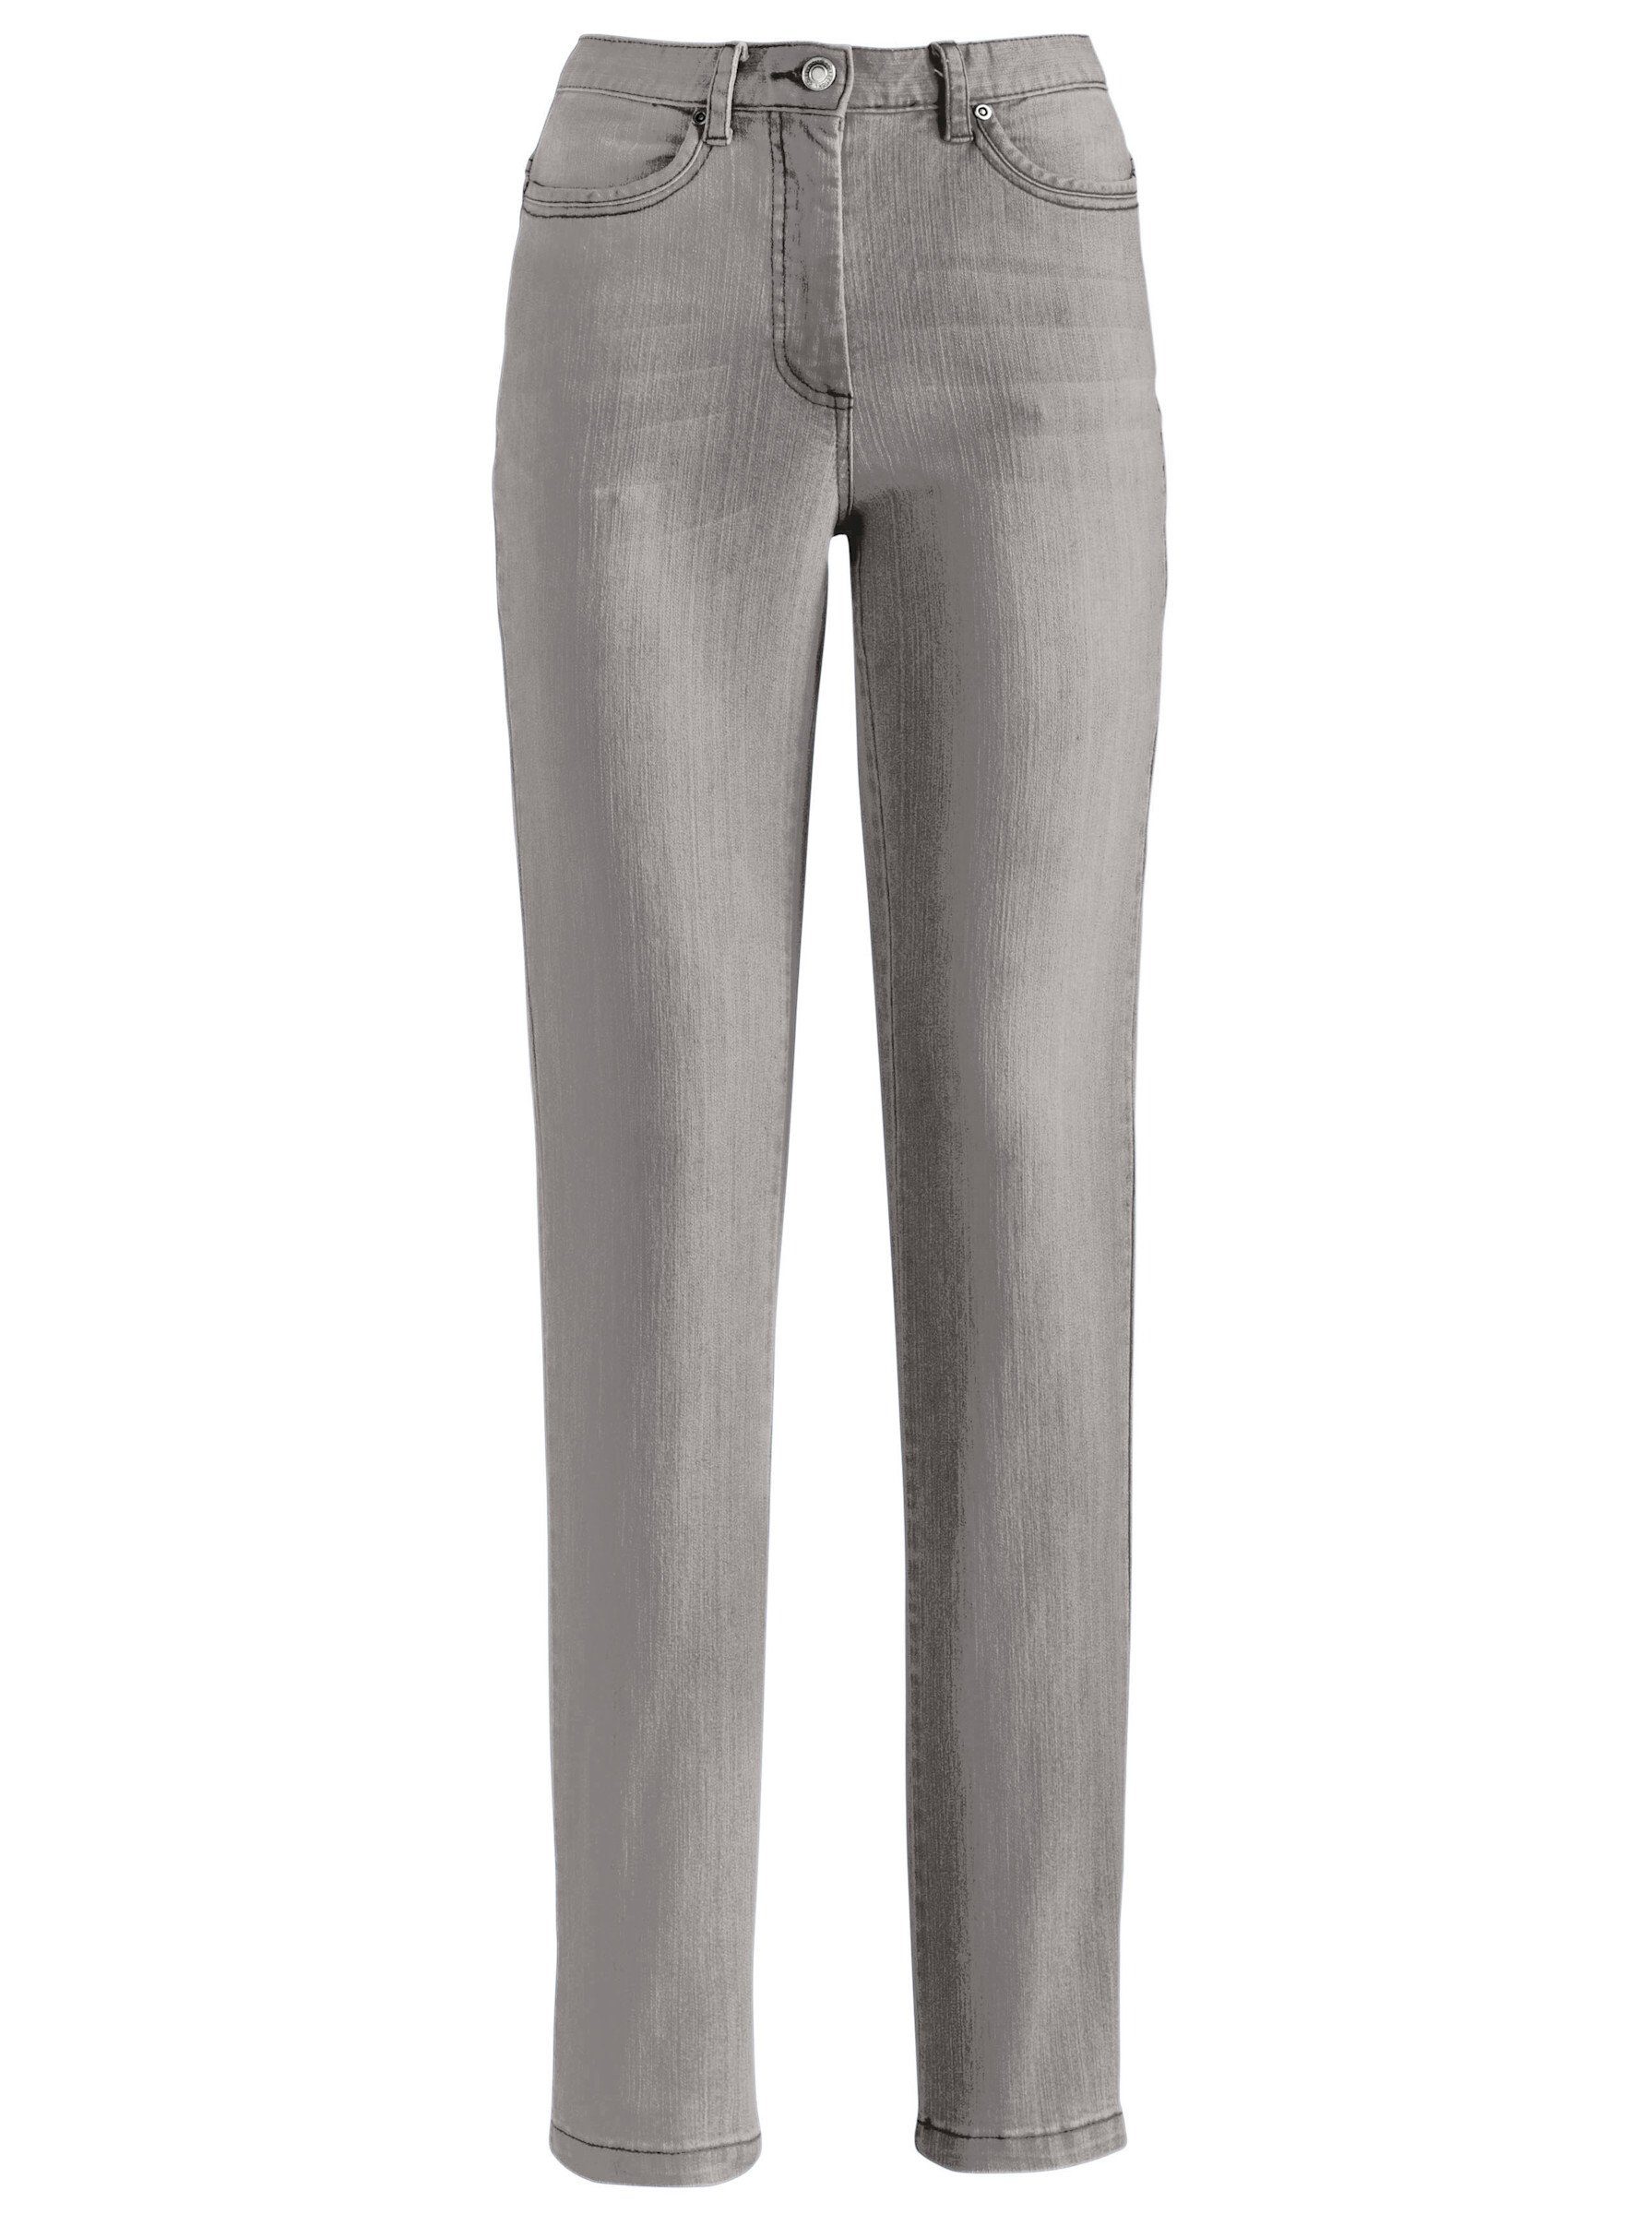 WITT Jeans grey-denim Bequeme WEIDEN